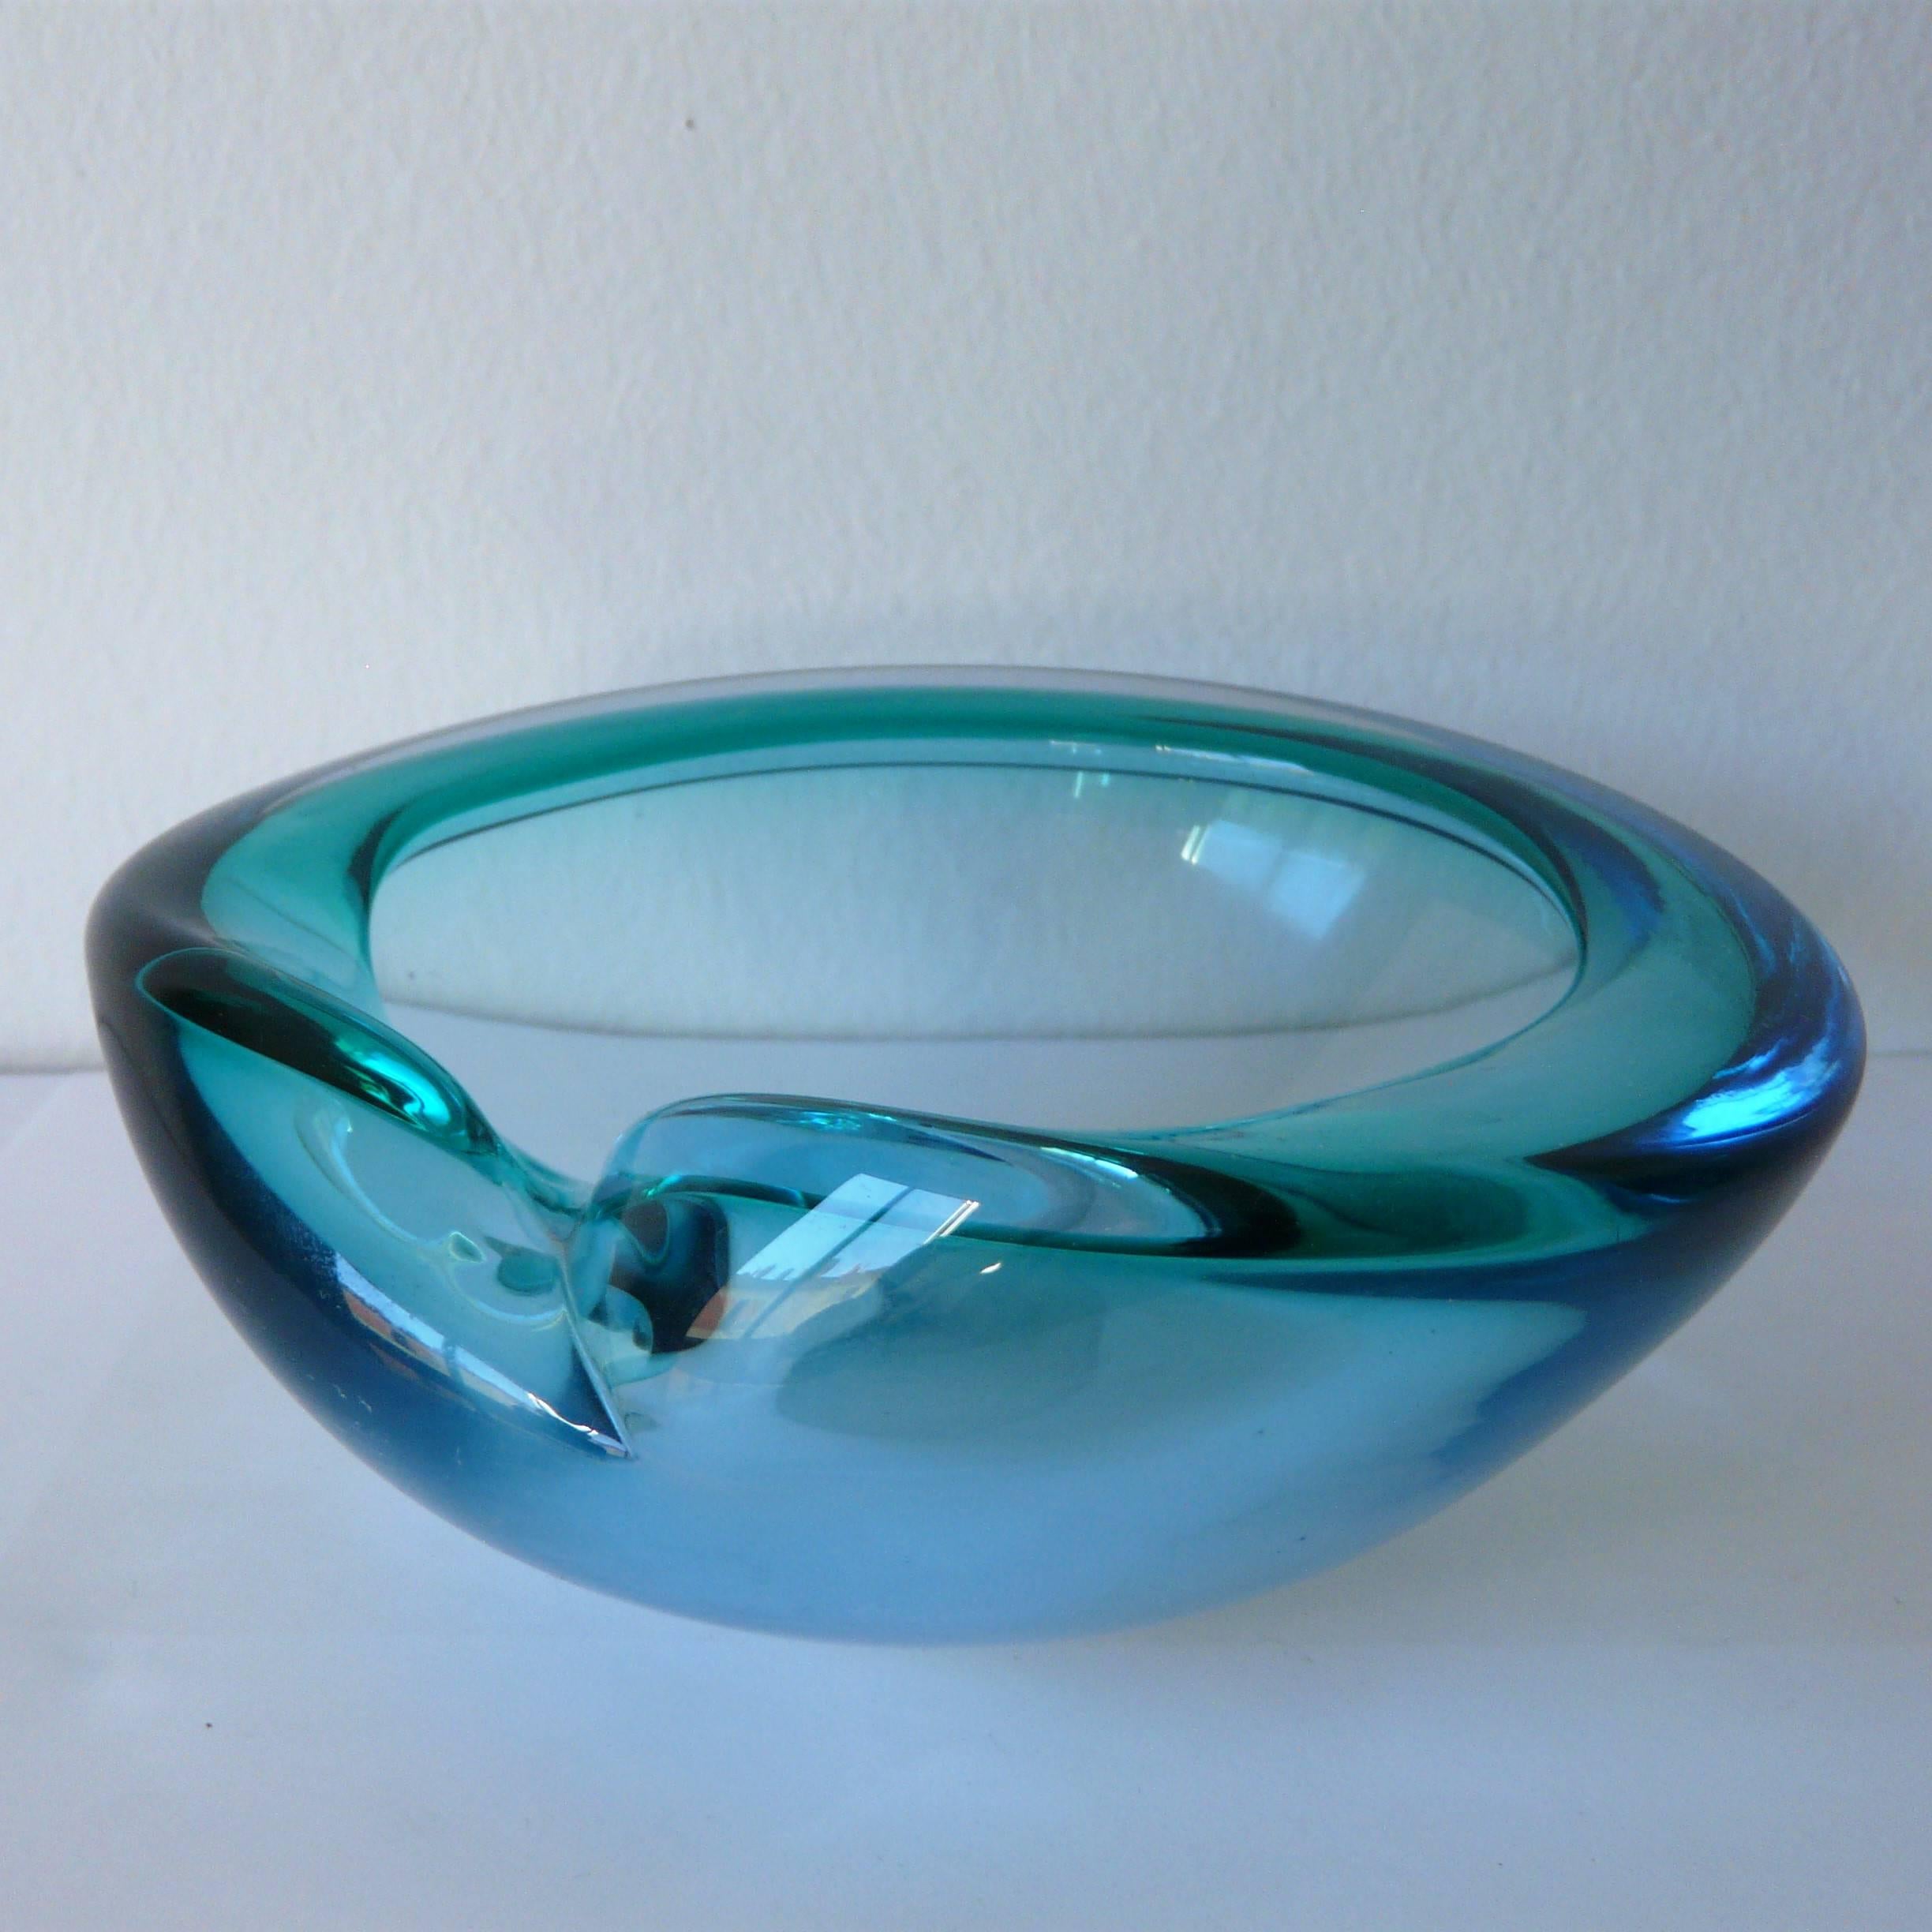 Italian blue and green Murano glass ashtray / bowl.